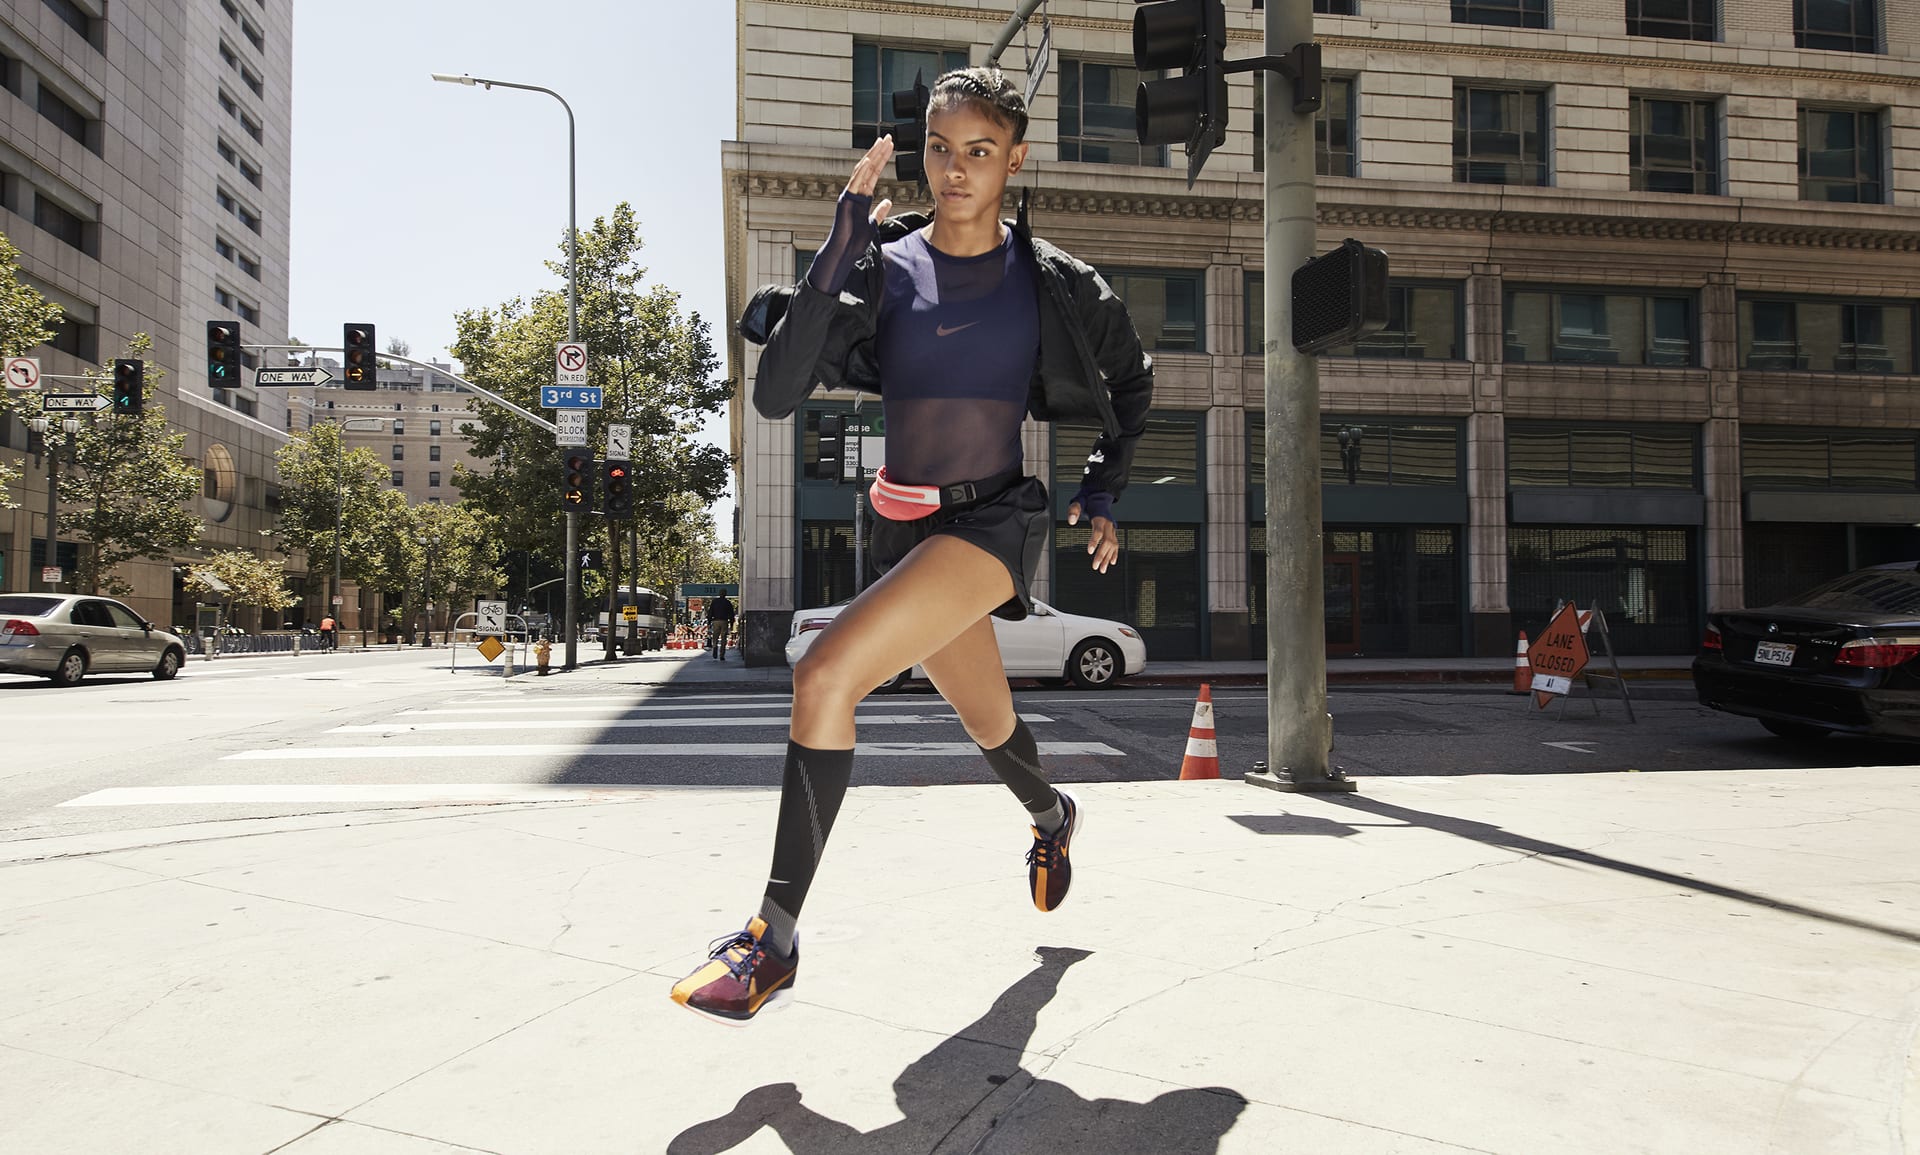 Nike Women's Tempo Running Shorts, Size Medium